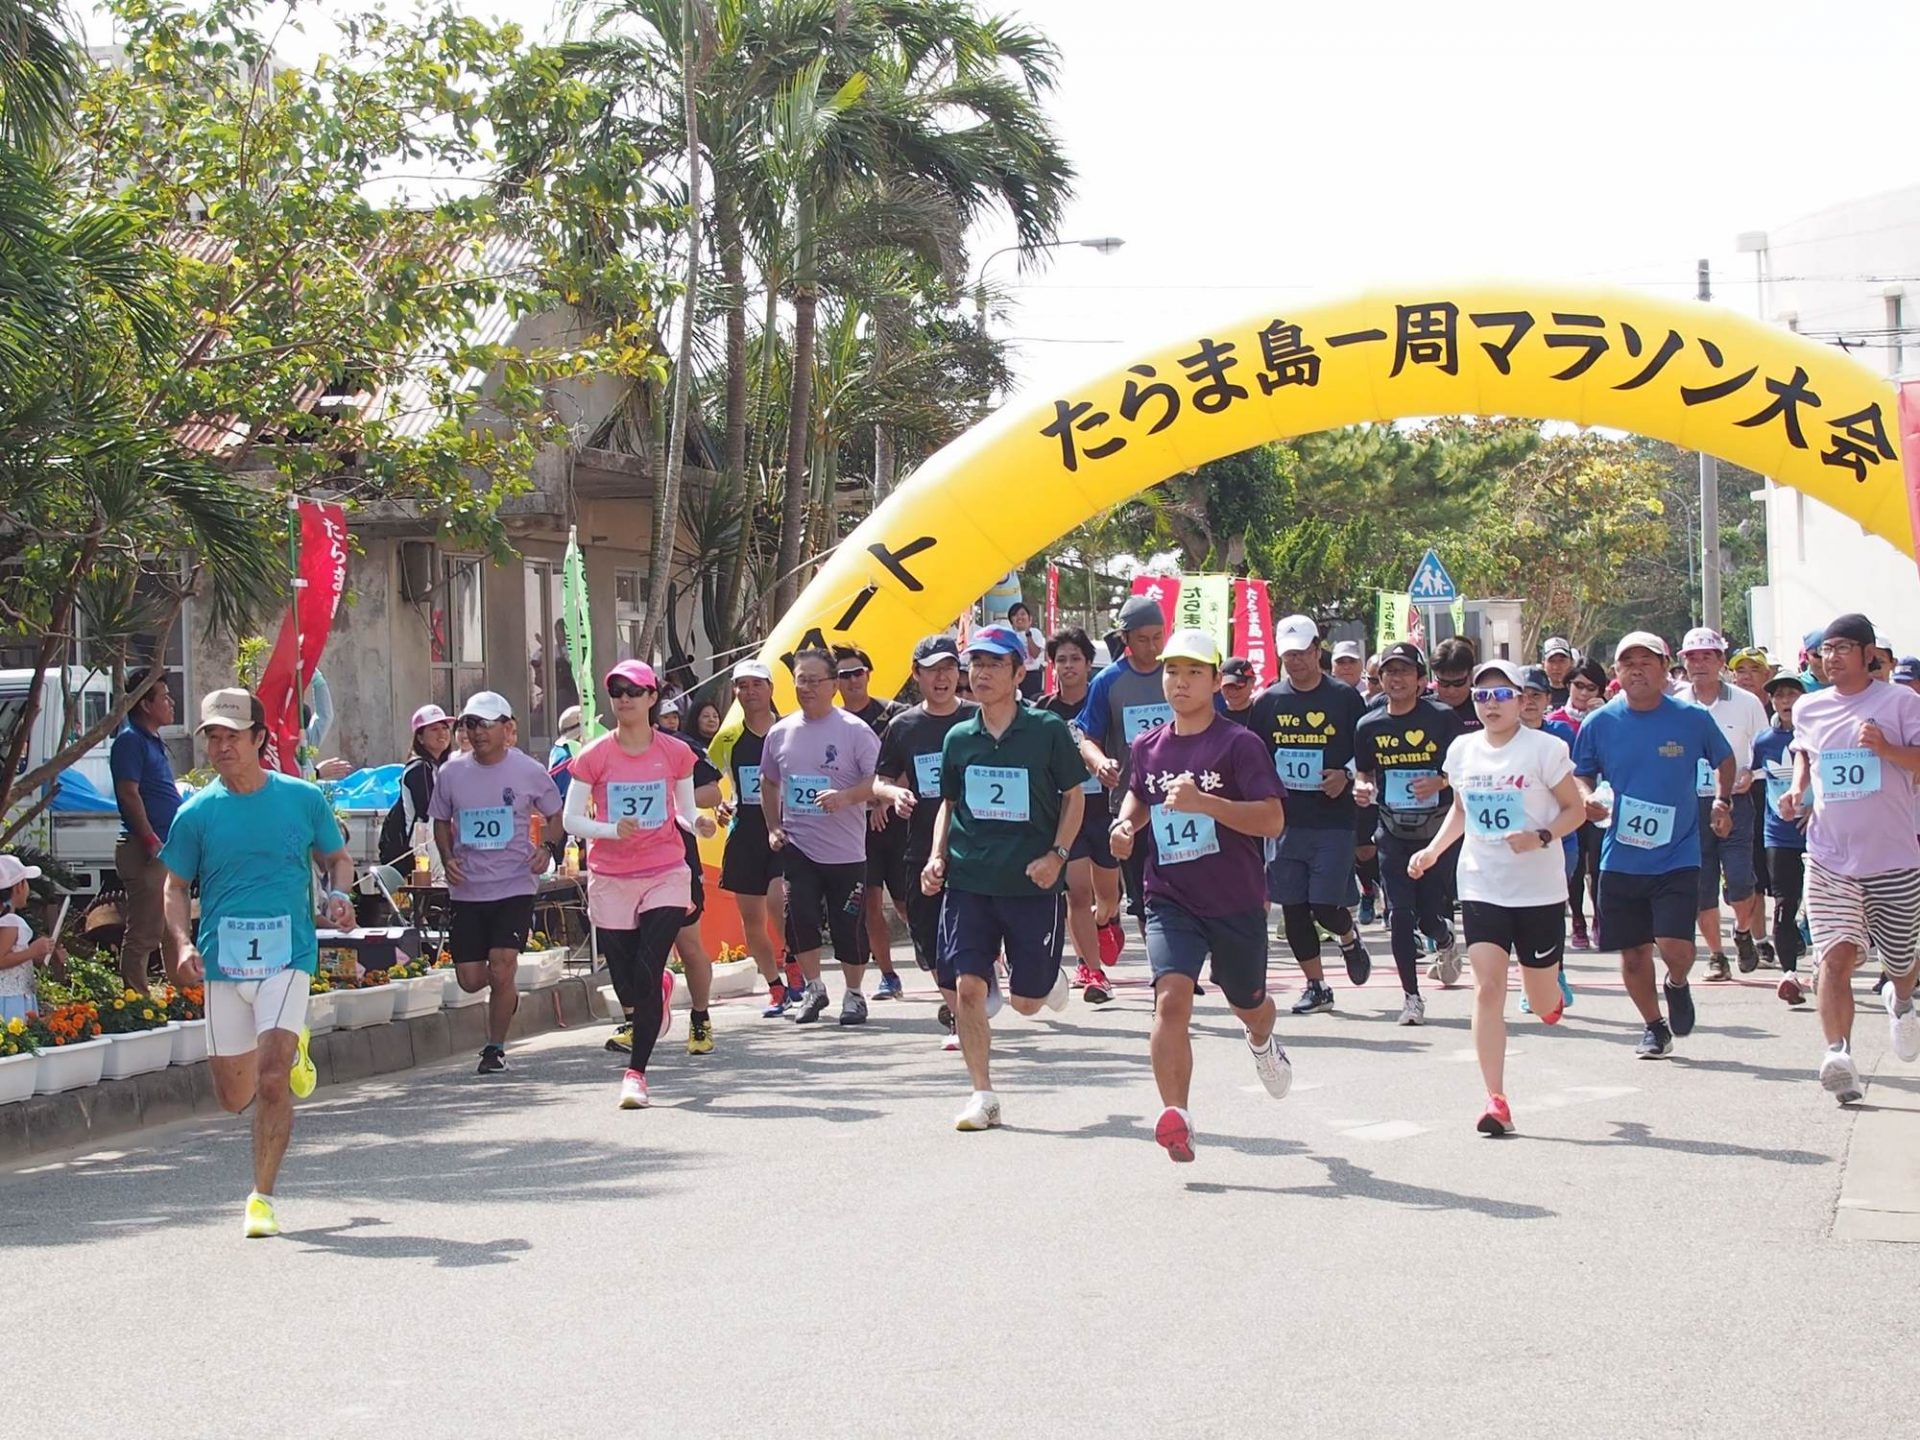 たらま島一周マラソン大会 で 多良間島のおいしさ やさしさに出会う 沖縄の観光情報はfeel Okinawa